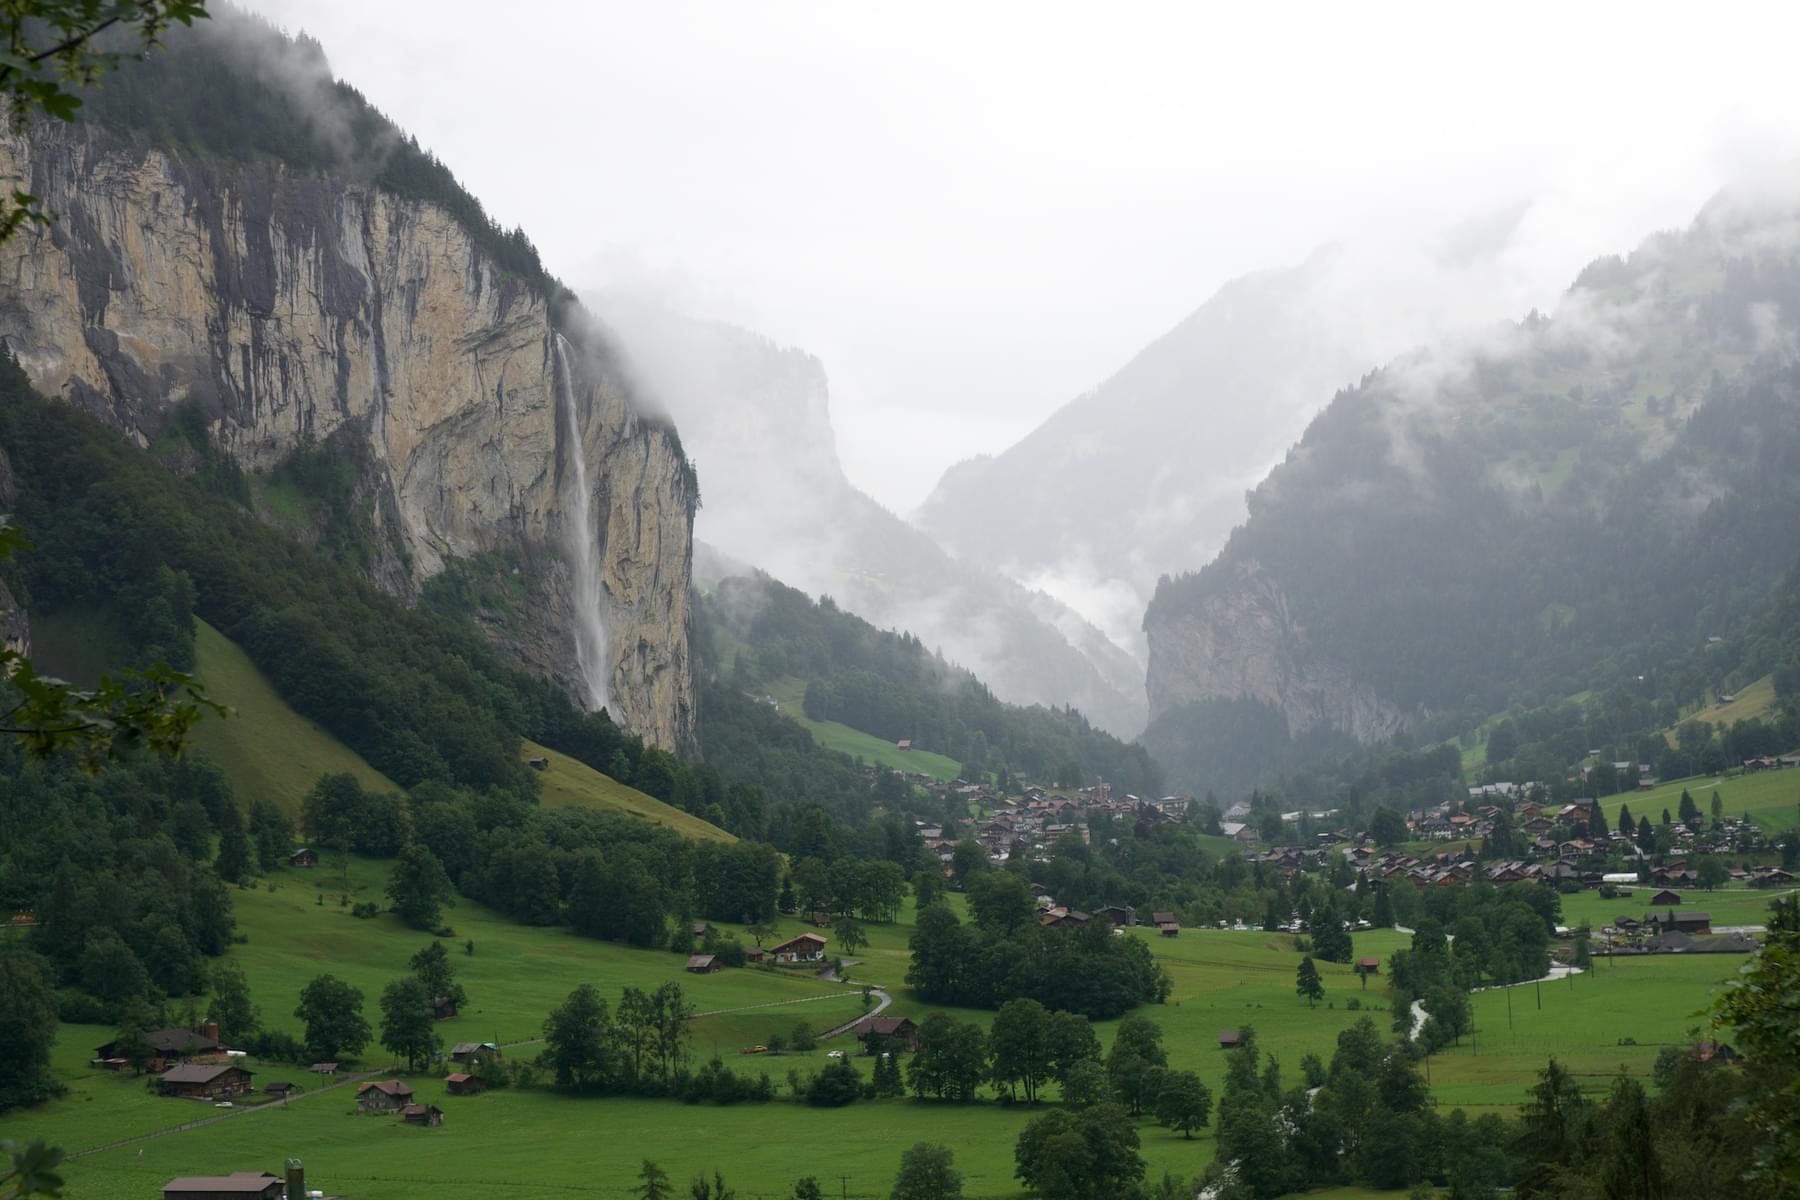 Hike through the Lauterbrunnen Valley